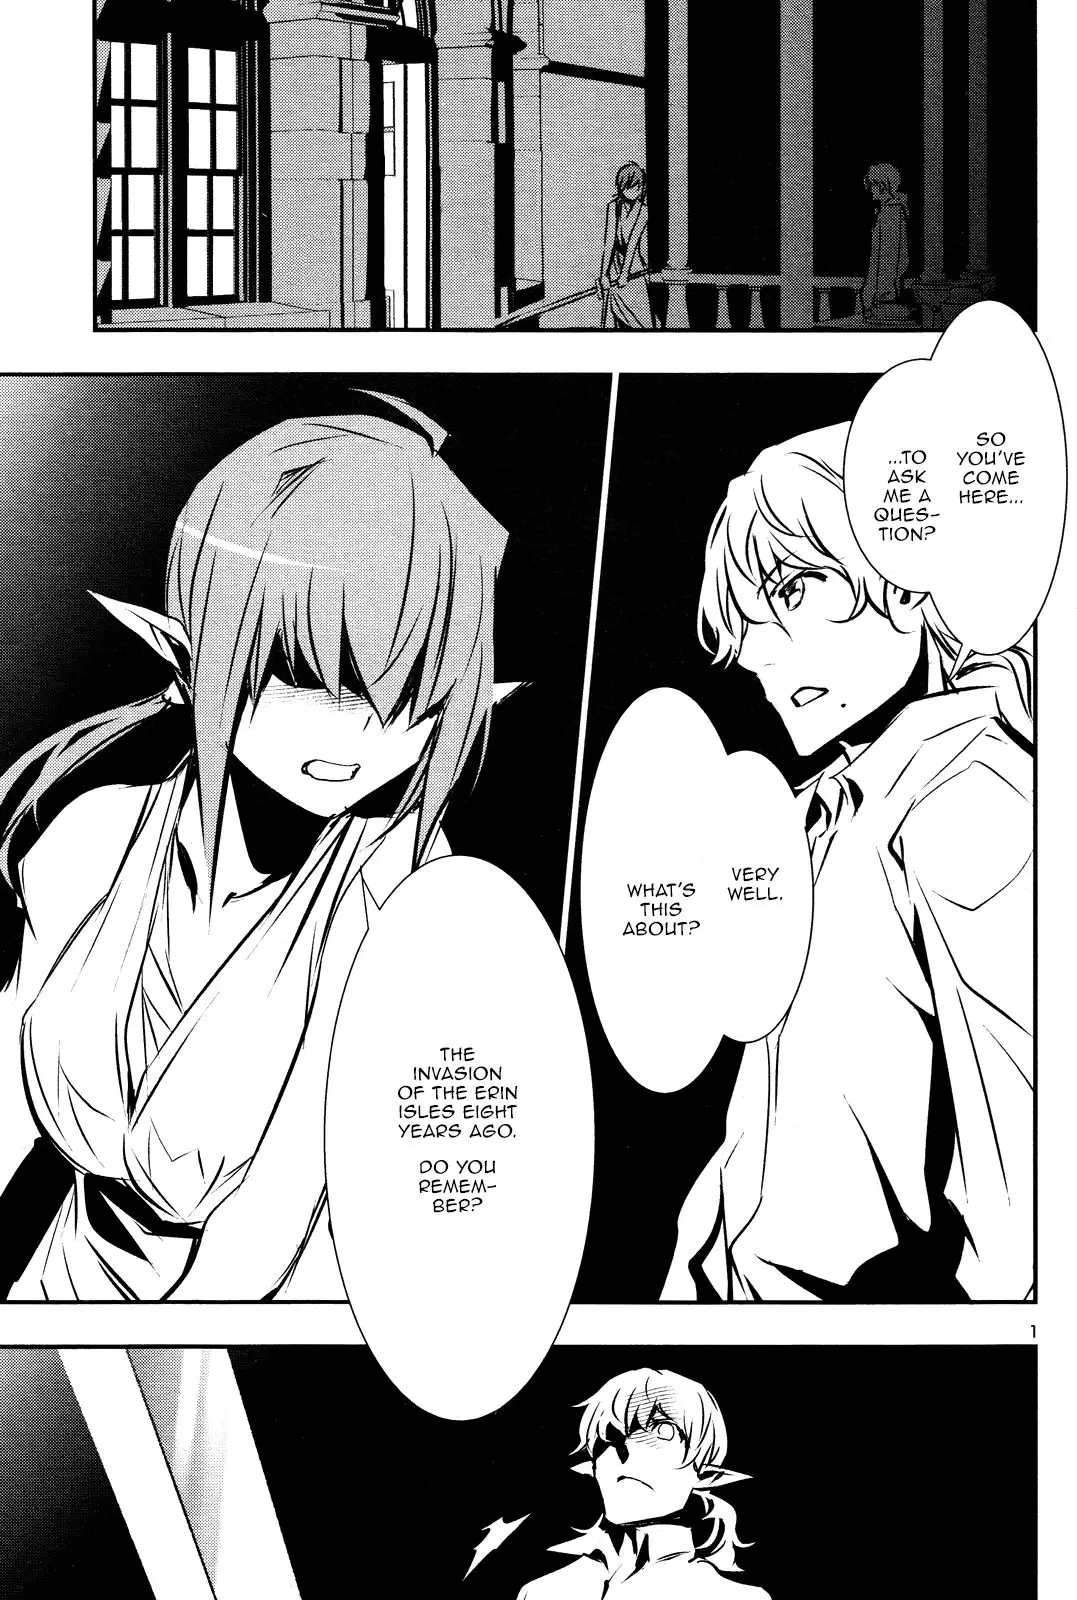 Shinju no Nectar - 38 page 1